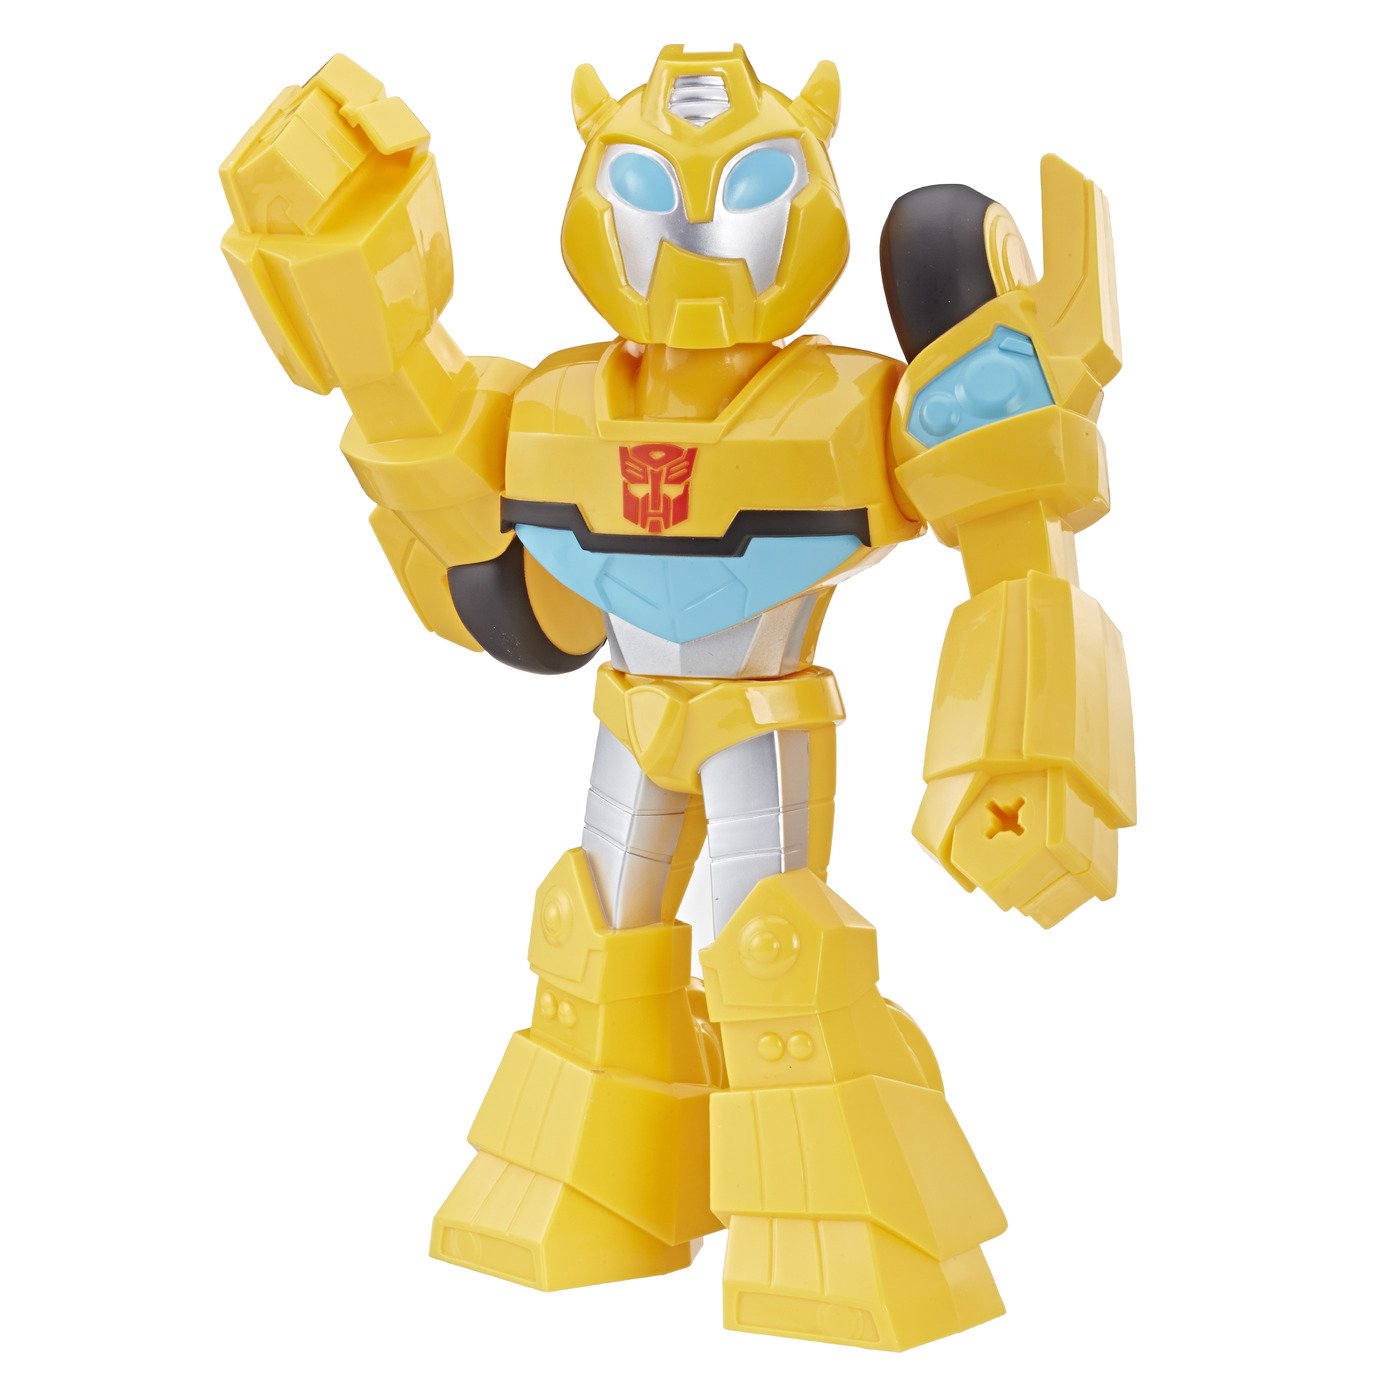 Playskool Heroes Transformers Mega Mighties Bots Review